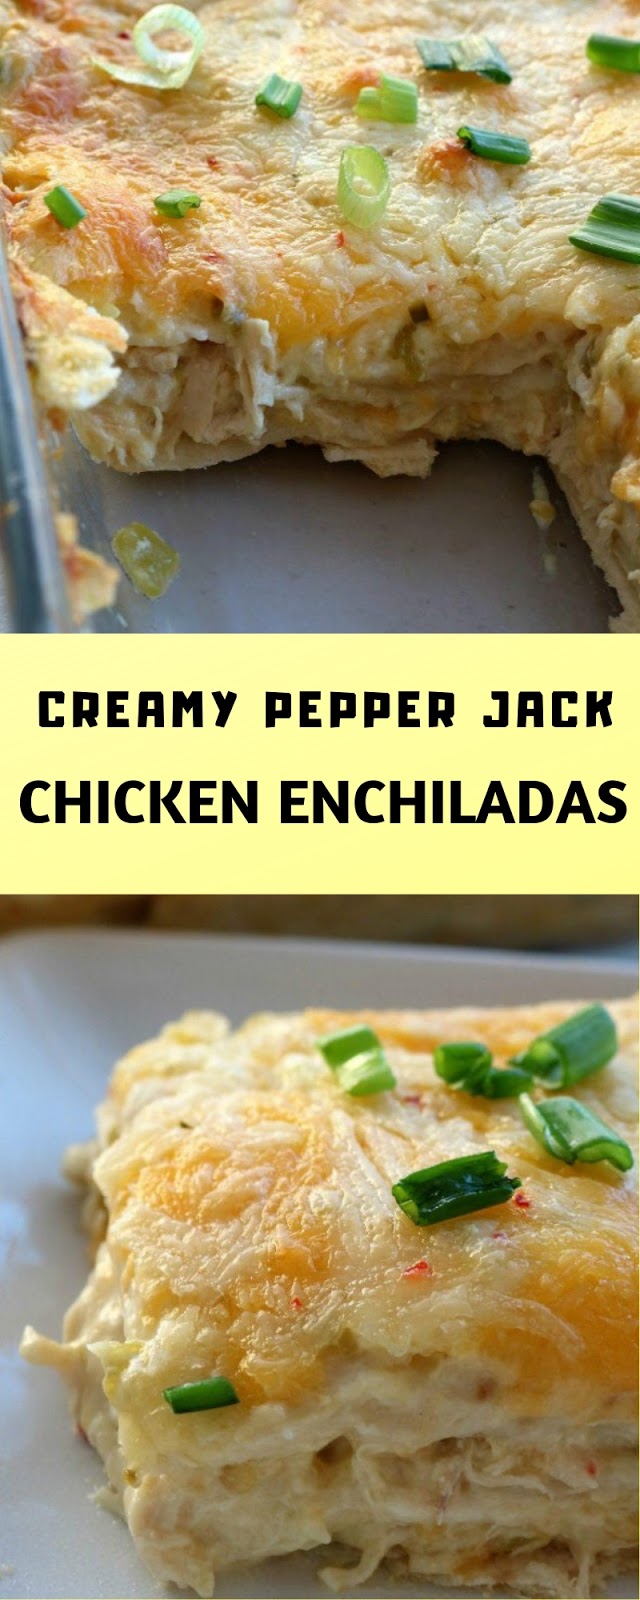 Creamy Pepper Jack Chicken Enchiladas